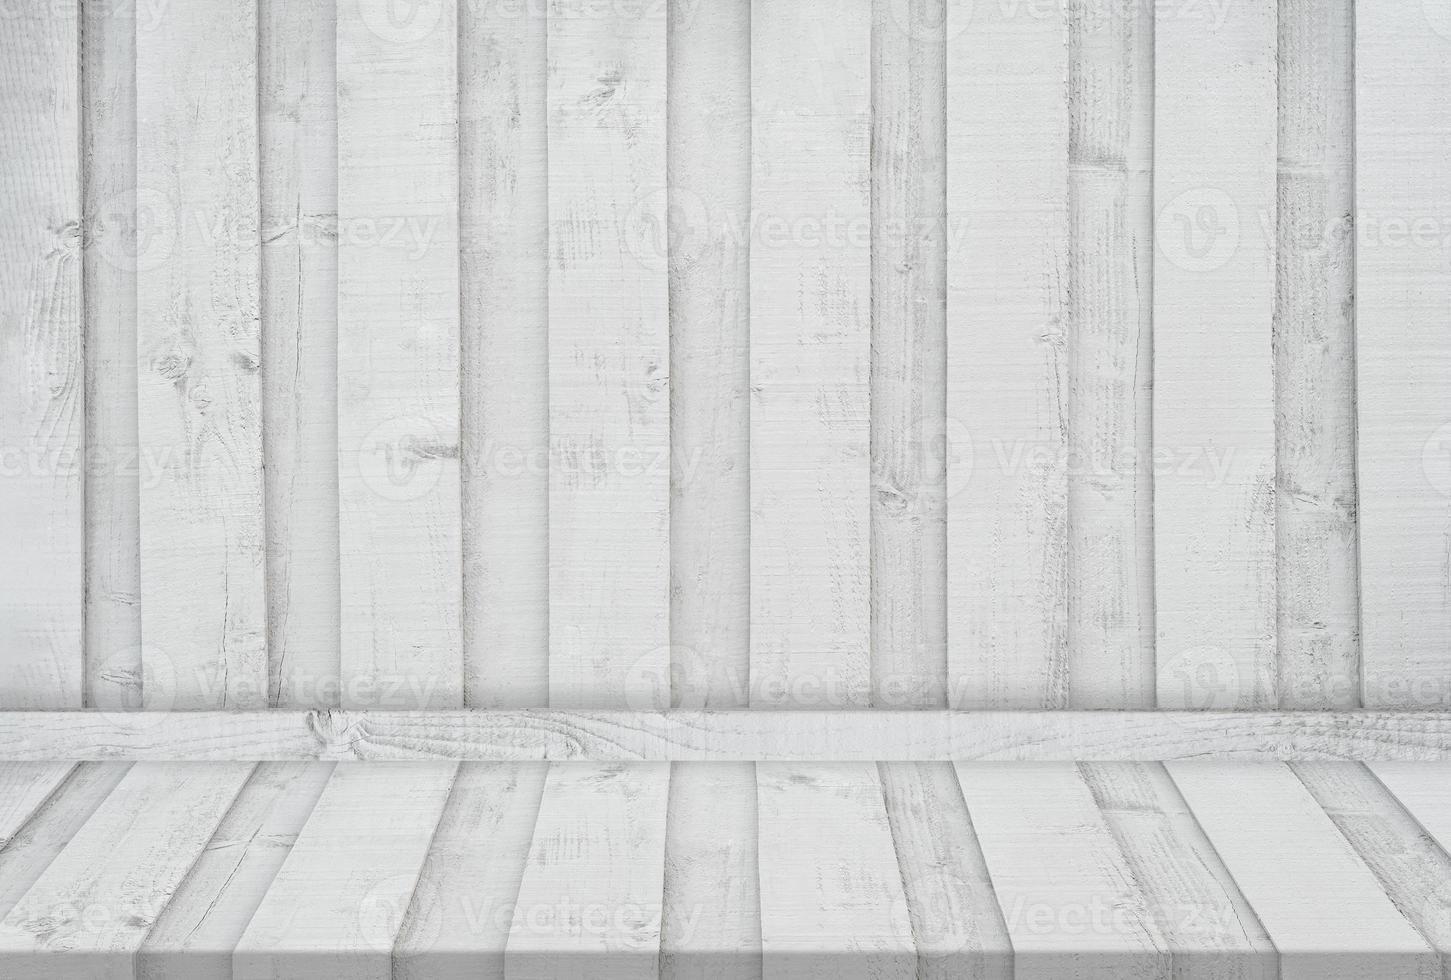 Sắc trắng của tấm ván gỗ này sẽ giúp không gian nhà bạn trở nên sáng sủa hơn bao giờ hết. Hãy ngắm nhìn hình ảnh và cảm nhận sự thật sáng chói mà màu trắng mang lại.